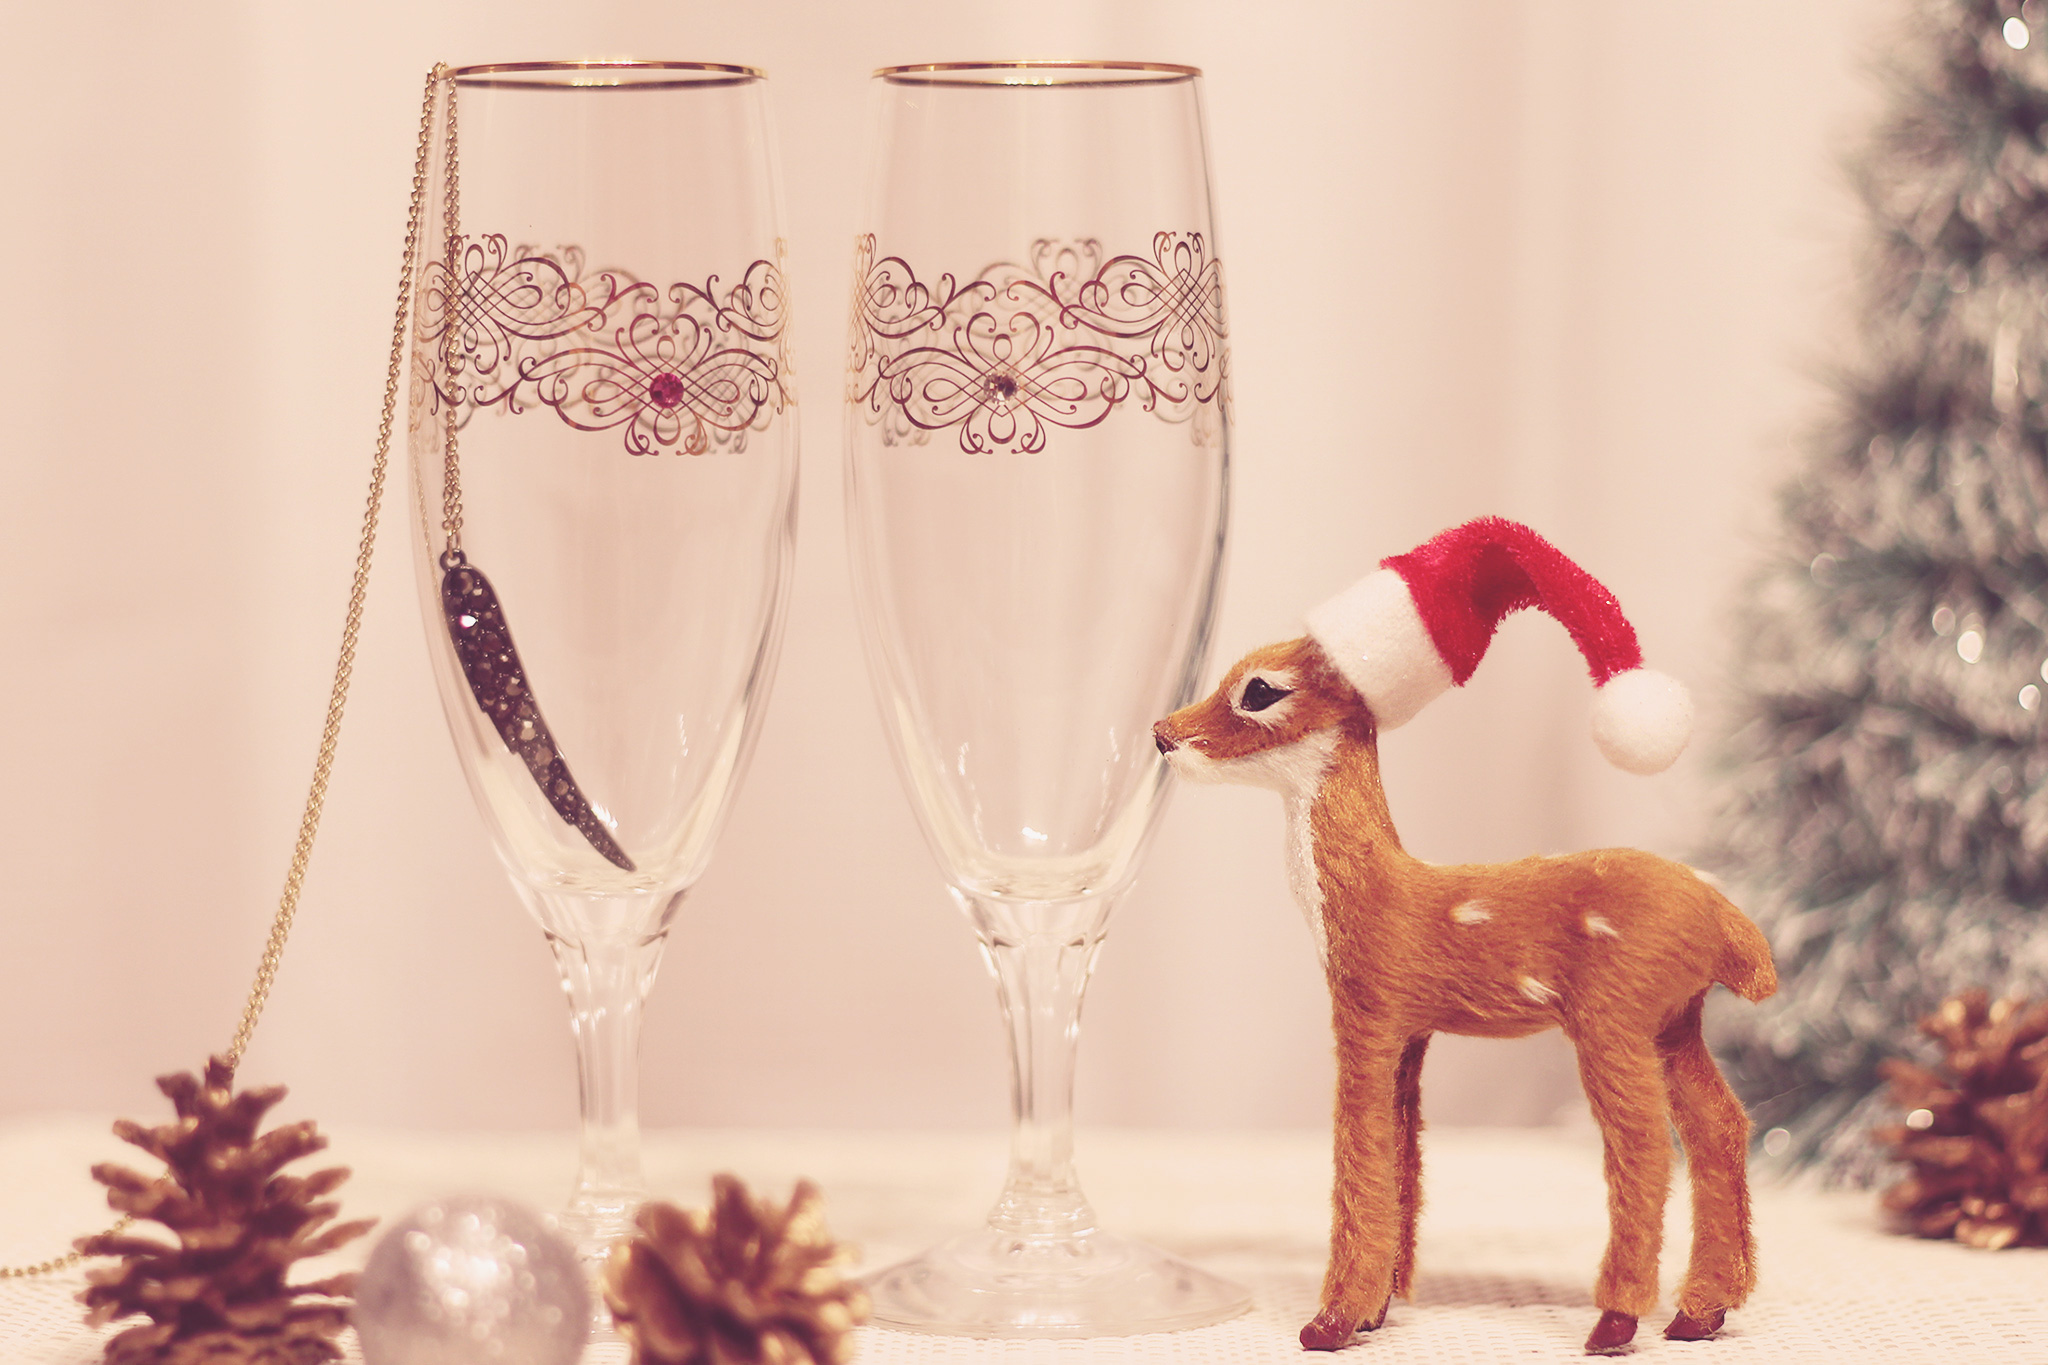 クリスマス装飾がしてある部屋にトナカイとワイングラスがある写真